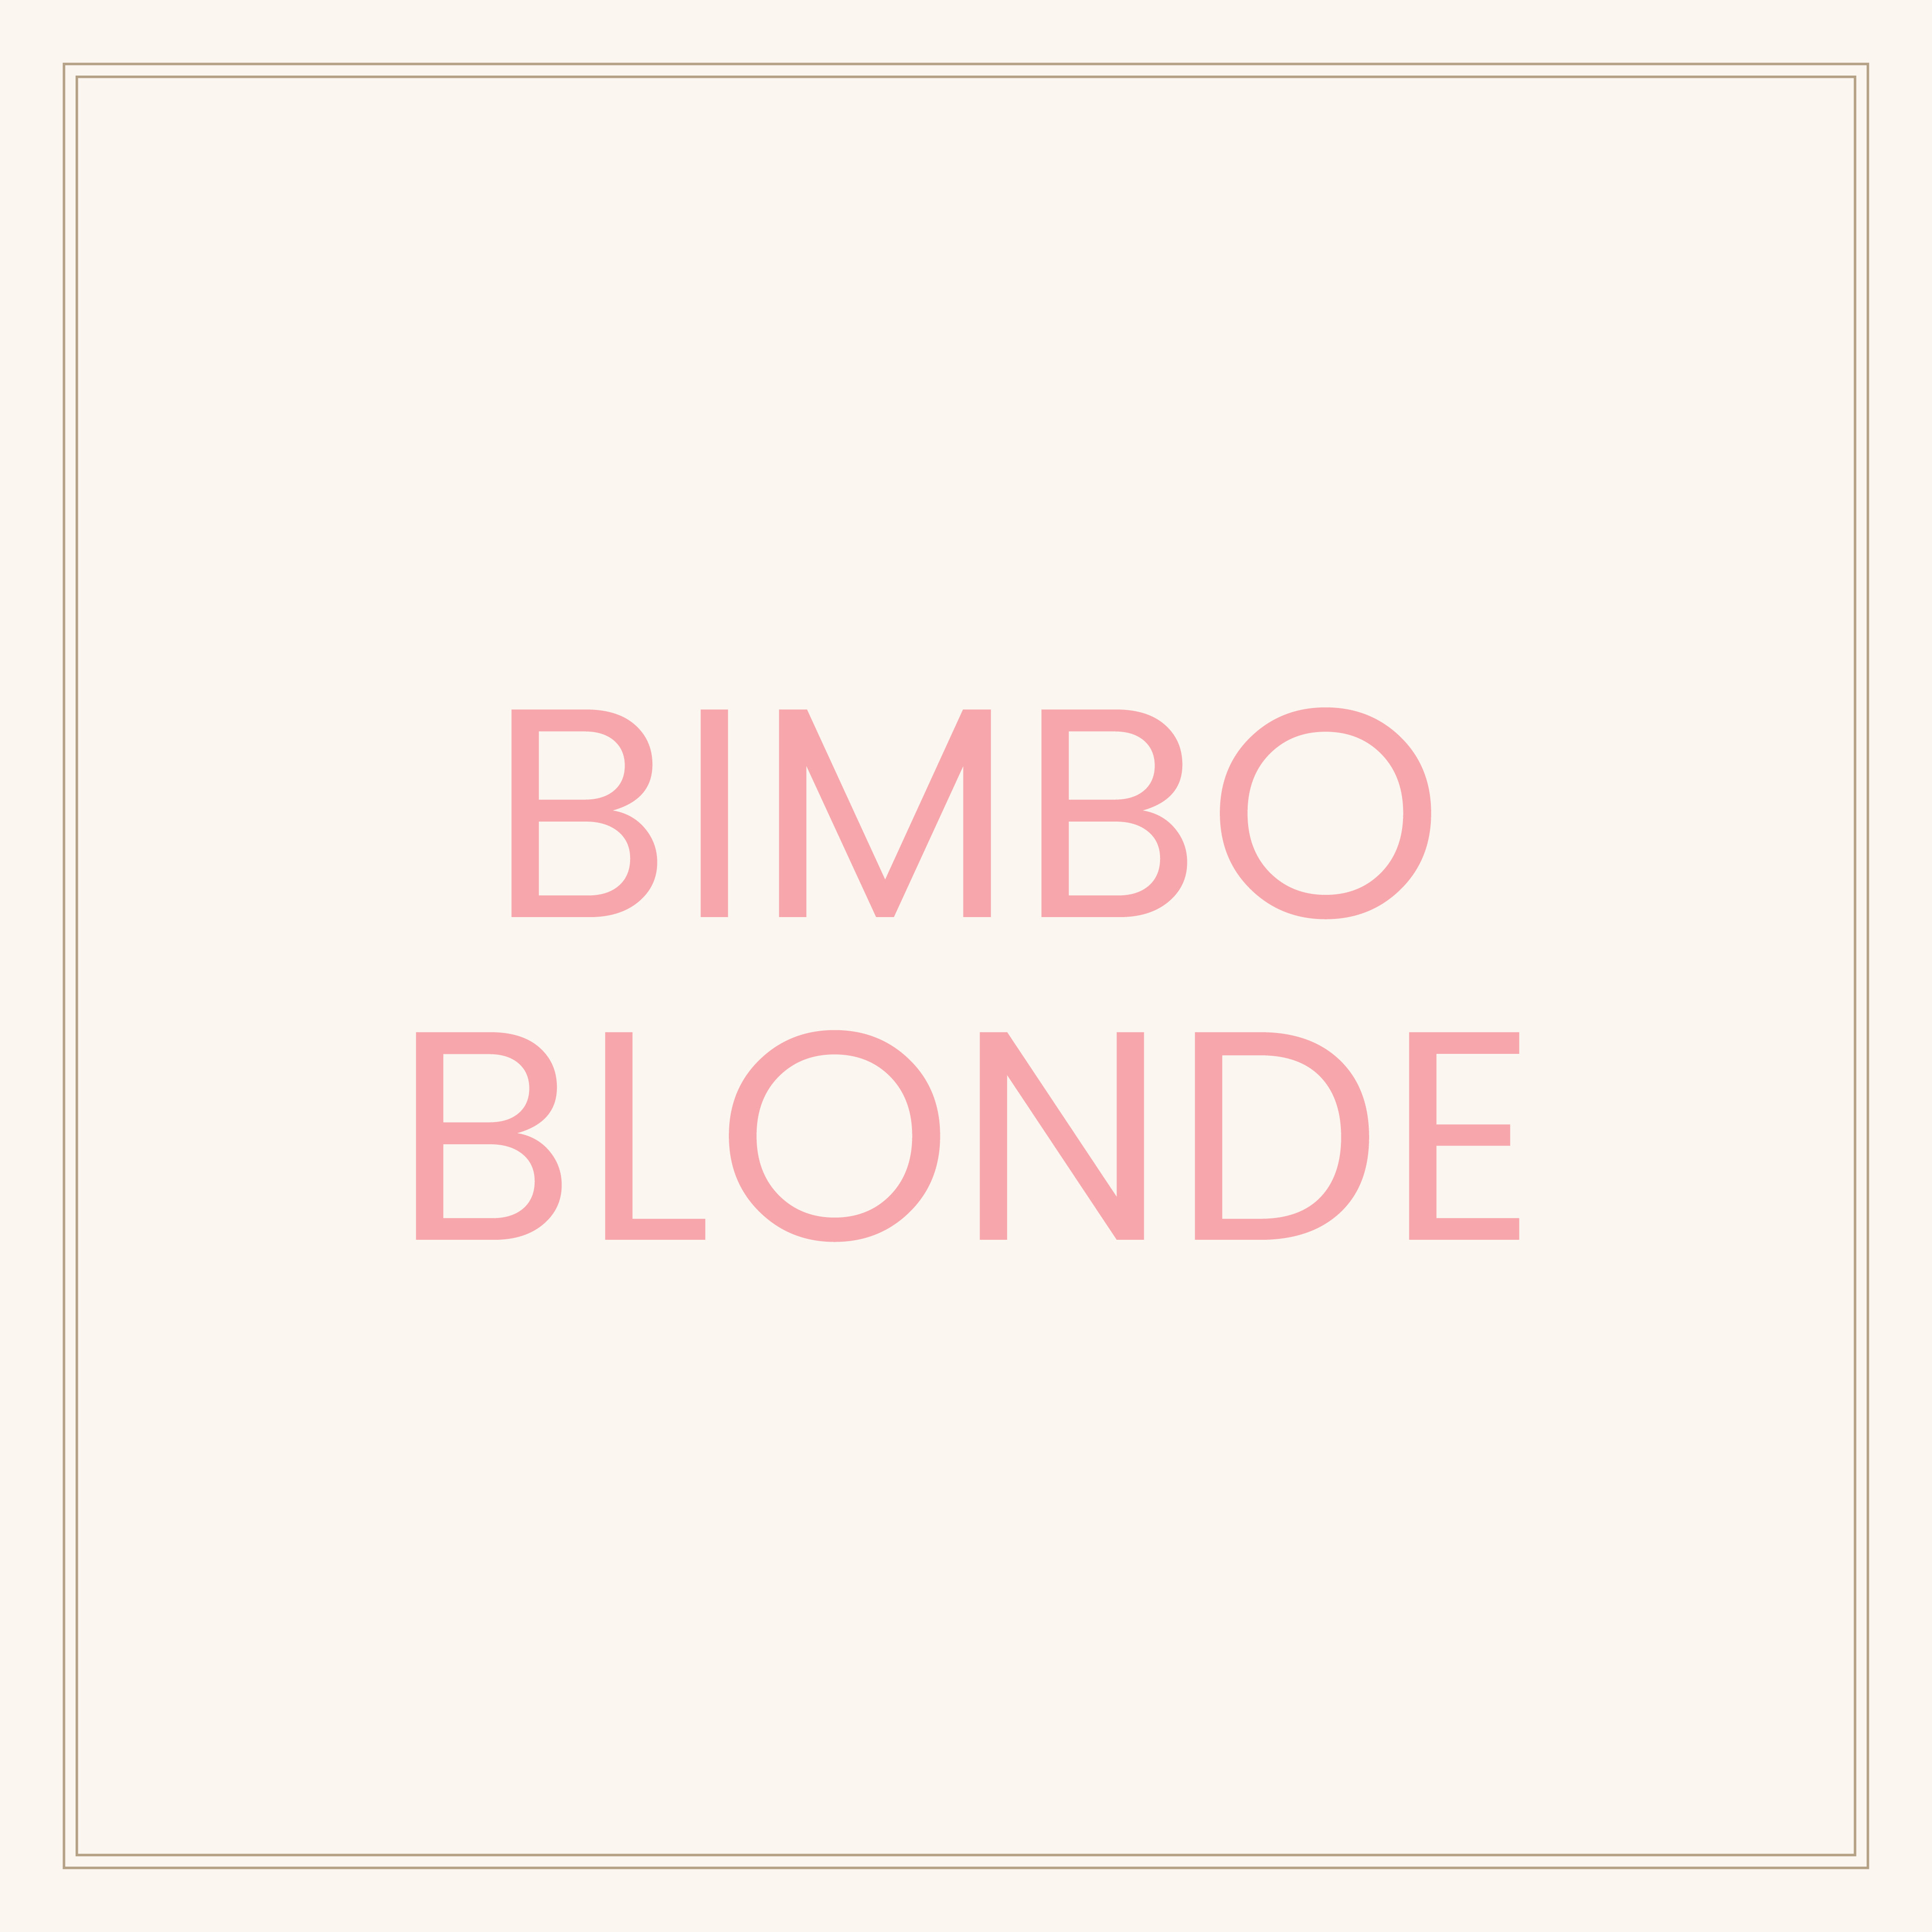 Kor bimbo blonde social post cover april 2019